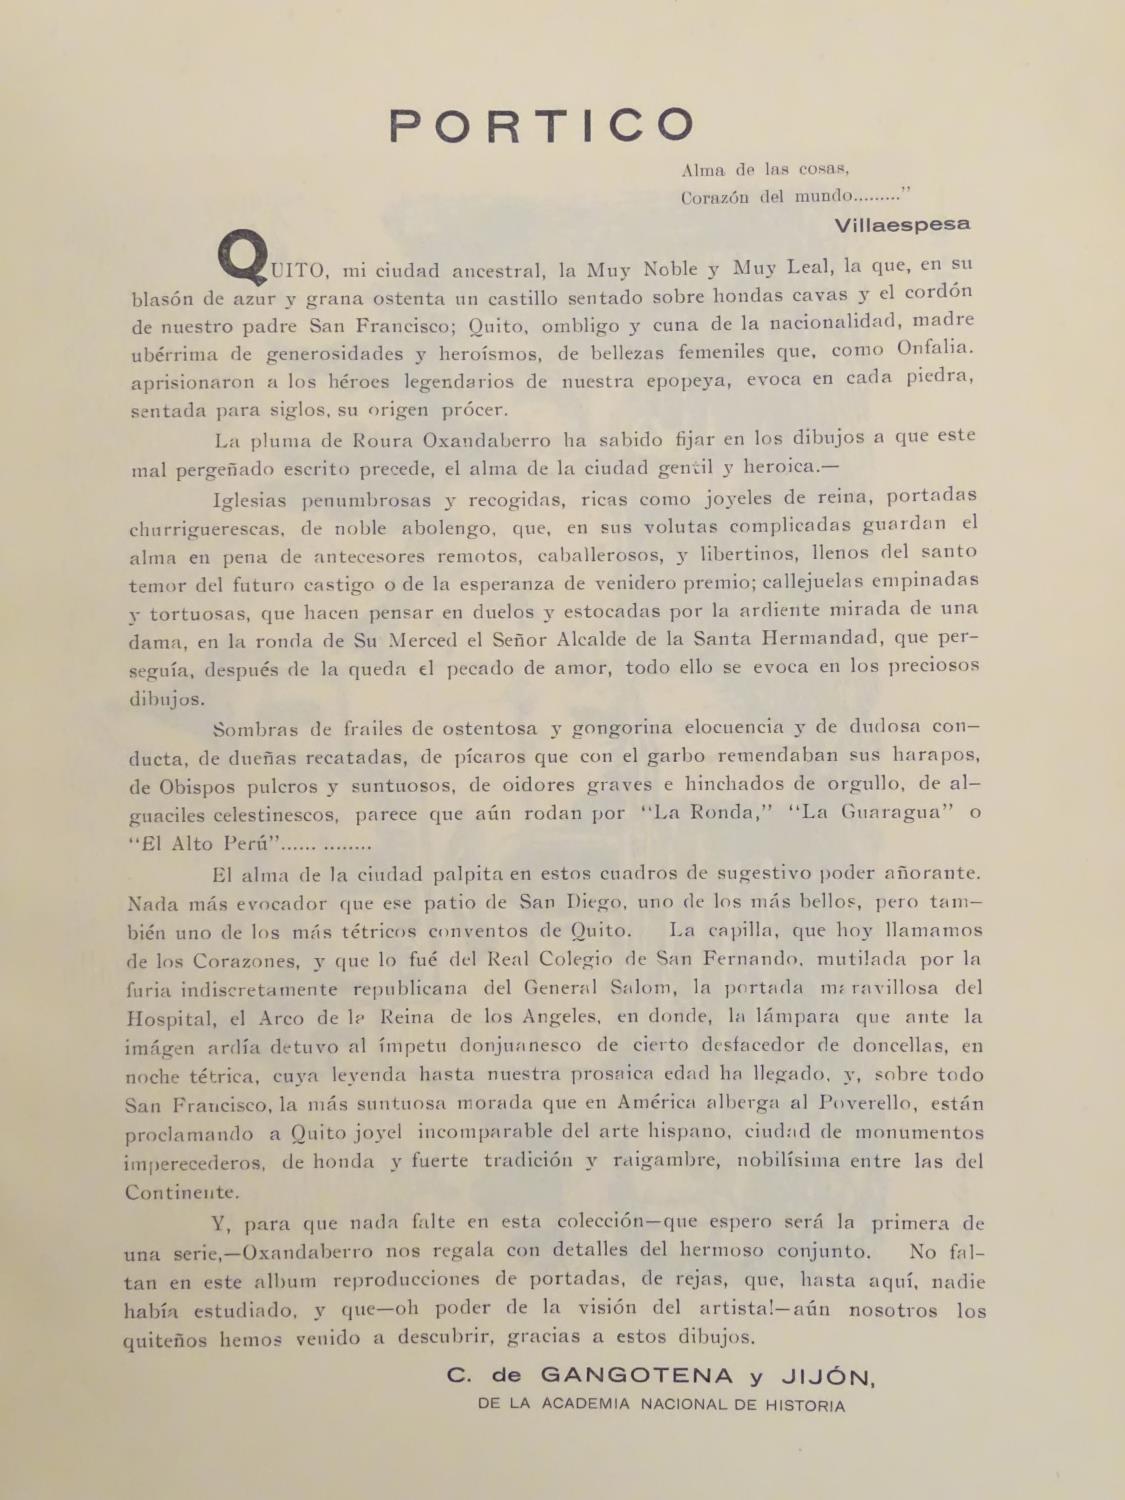 Book: Quito Monumental Folk-Lore por Roura Oxandaberro 1928 1929, a folio containing two volumes - Image 4 of 10